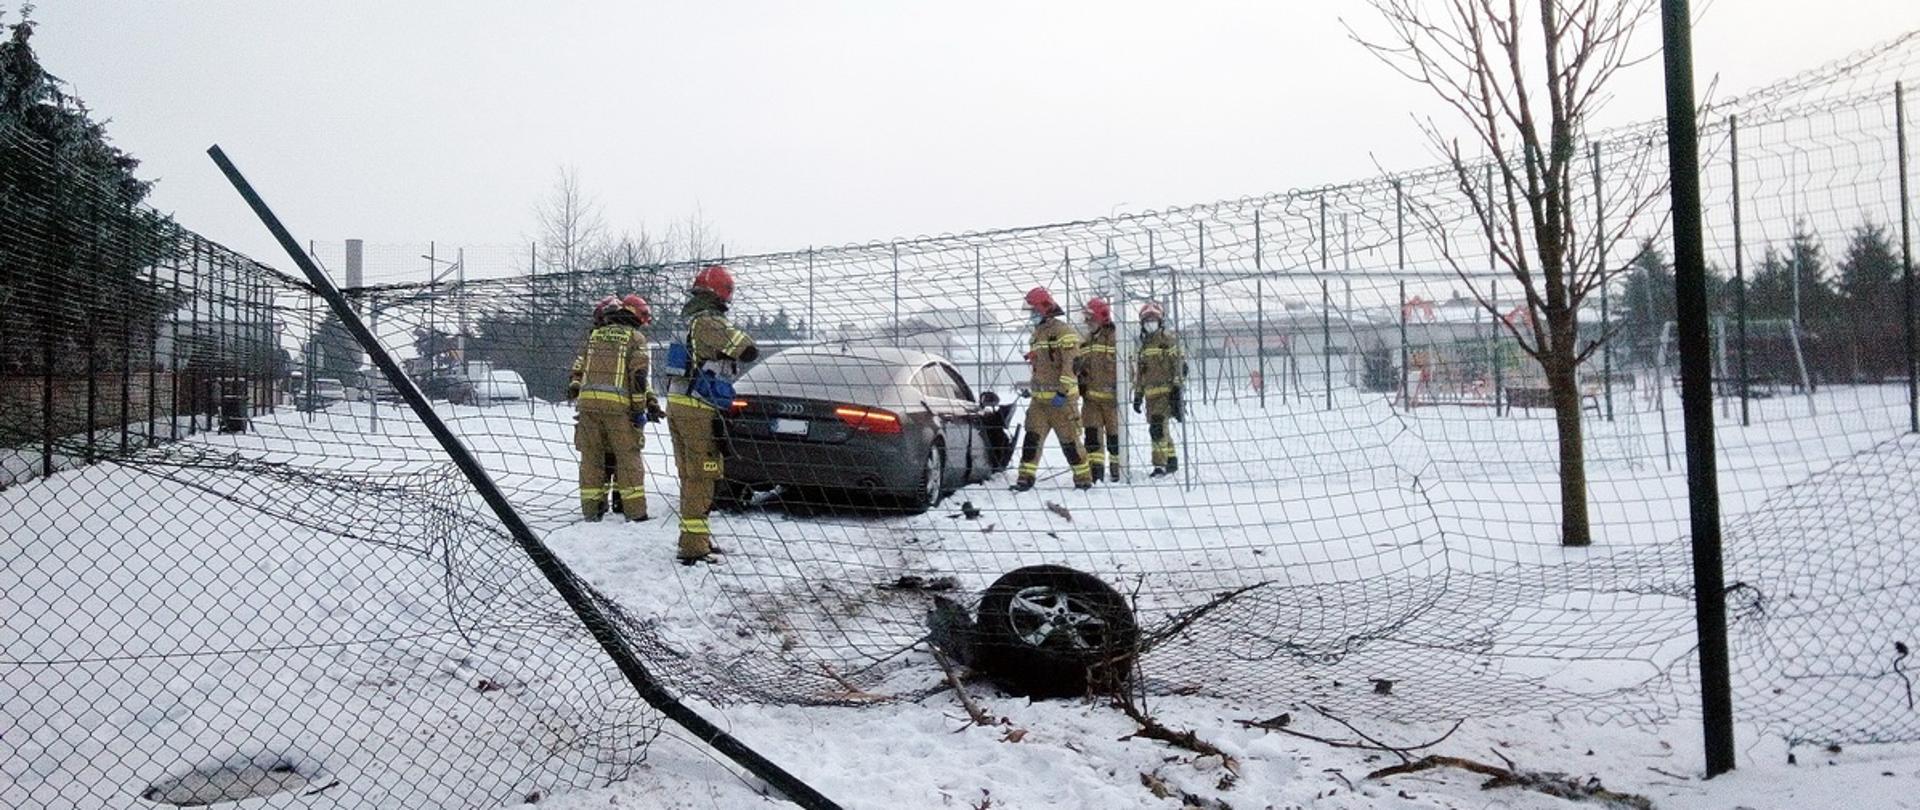 Zdarzenie komunikacyjne, w którym kierowca samochodu marki Audi pokonał ogrodzenie z siatki i wjechał na boisko. W koło samochodu znajdują się strażacy udzielając pomocy poszkodowanym oraz zabezpieczają miejsce zdarzenia. 